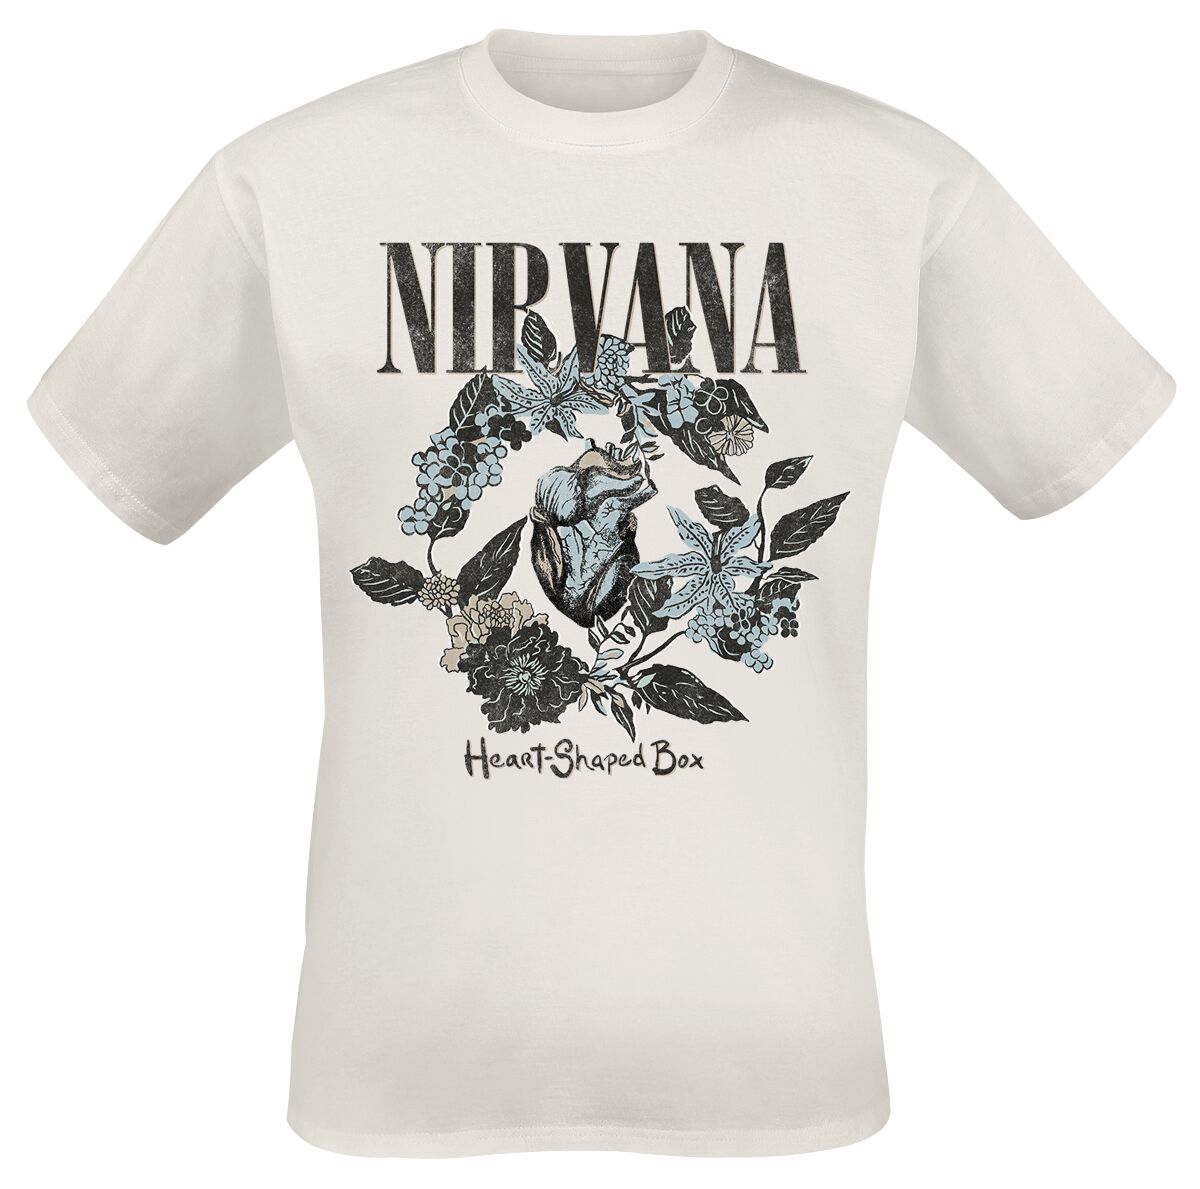 Nirvana T-Shirt - Heart Shape Box - S bis 3XL - für Männer - Größe L - weiß  - Lizenziertes Merchandise!